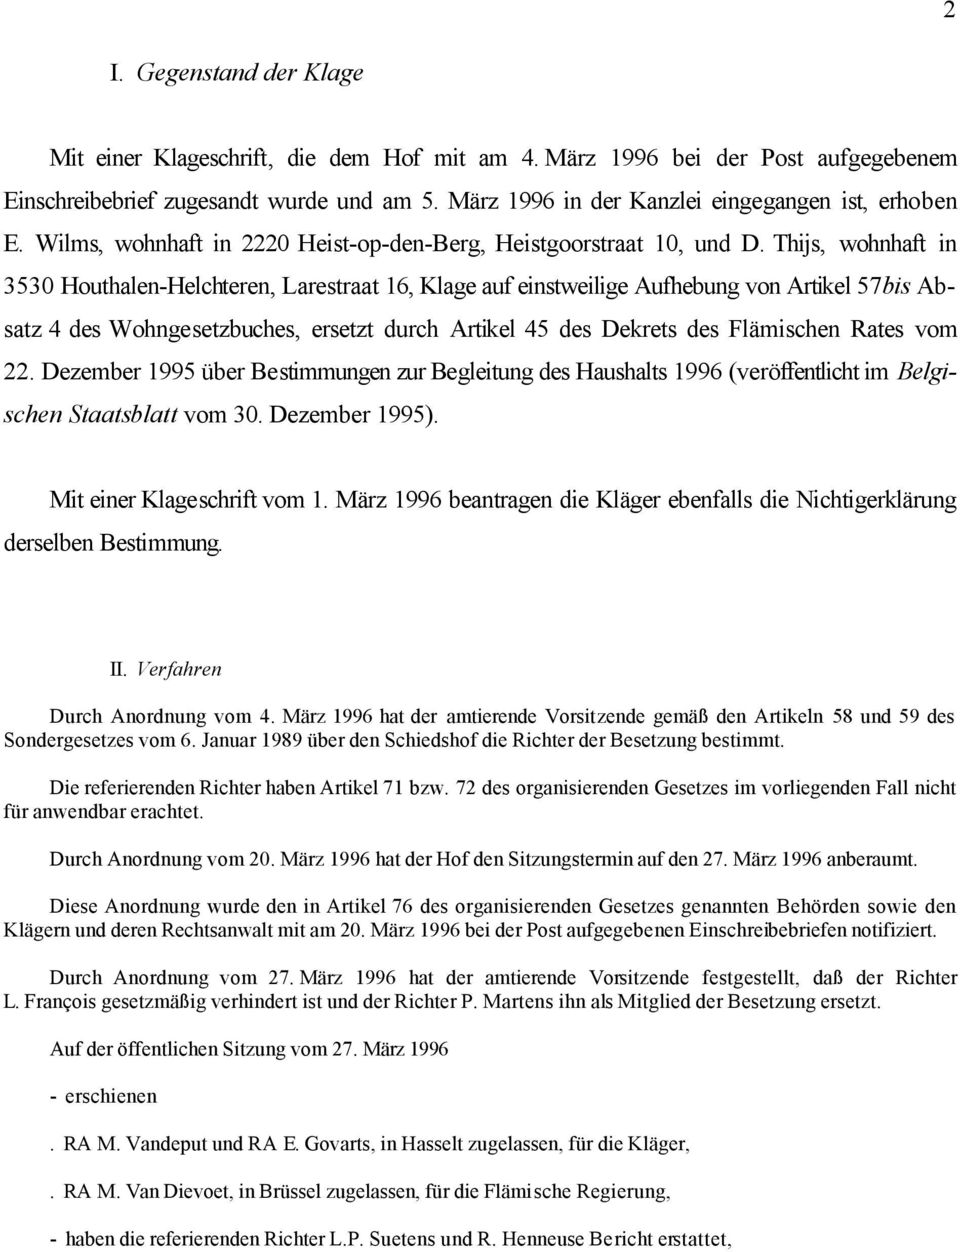 Thijs, wohnhaft in 3530 Houthalen-Helchteren, Larestraat 16, Klage auf einstweilige Aufhebung von Artikel 57bis Absatz 4 des Wohngesetzbuches, ersetzt durch Artikel 45 des Dekrets des Flämischen